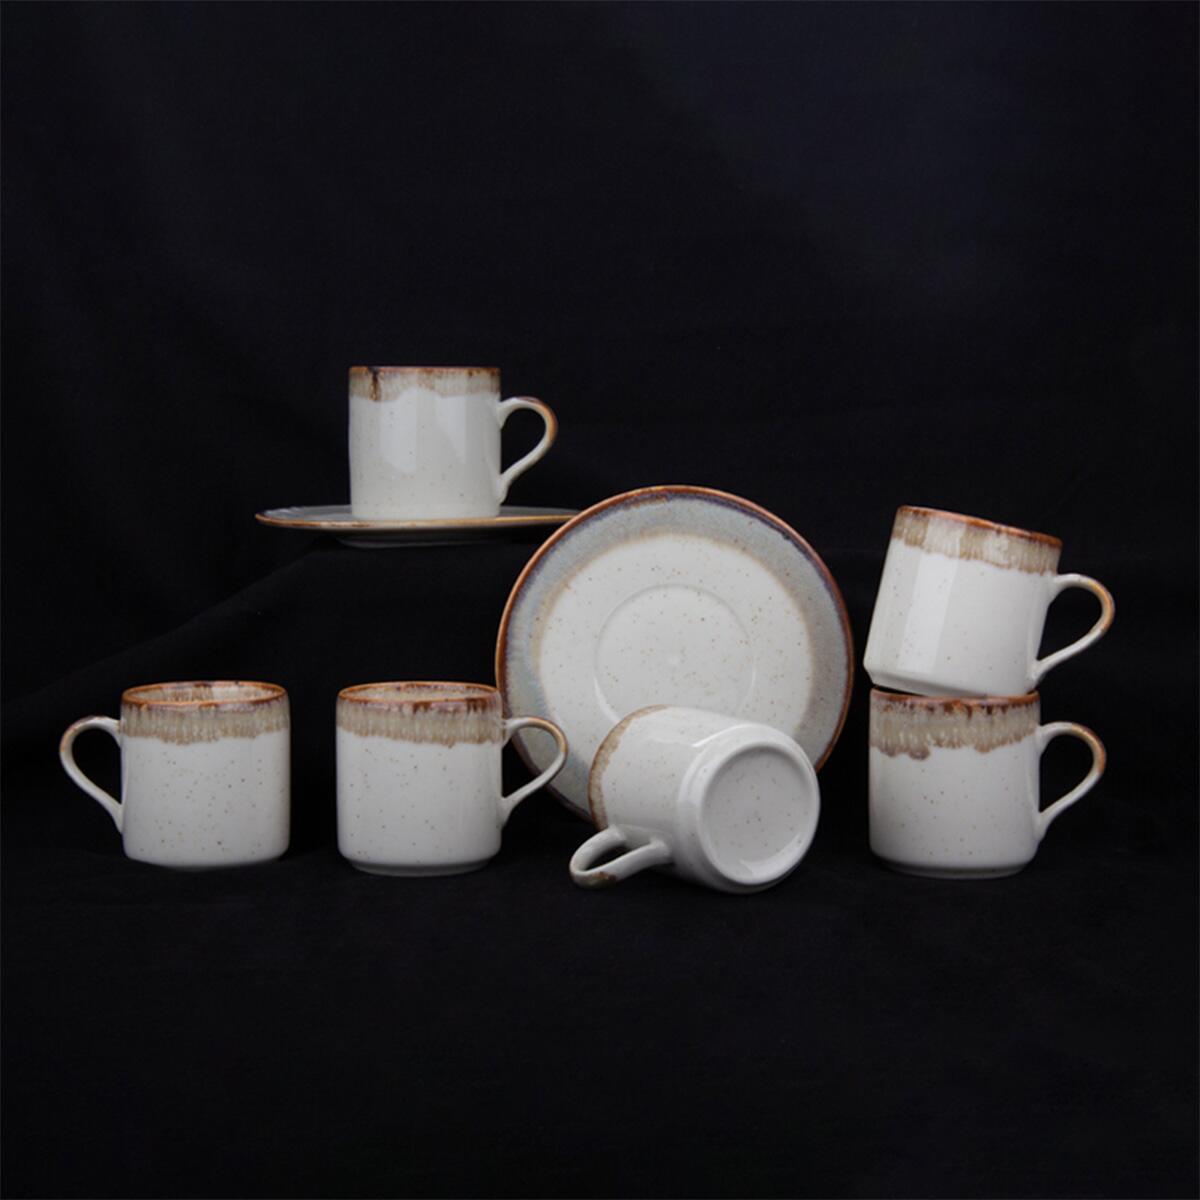 Aryıldız Pisa Coffee Cup Set